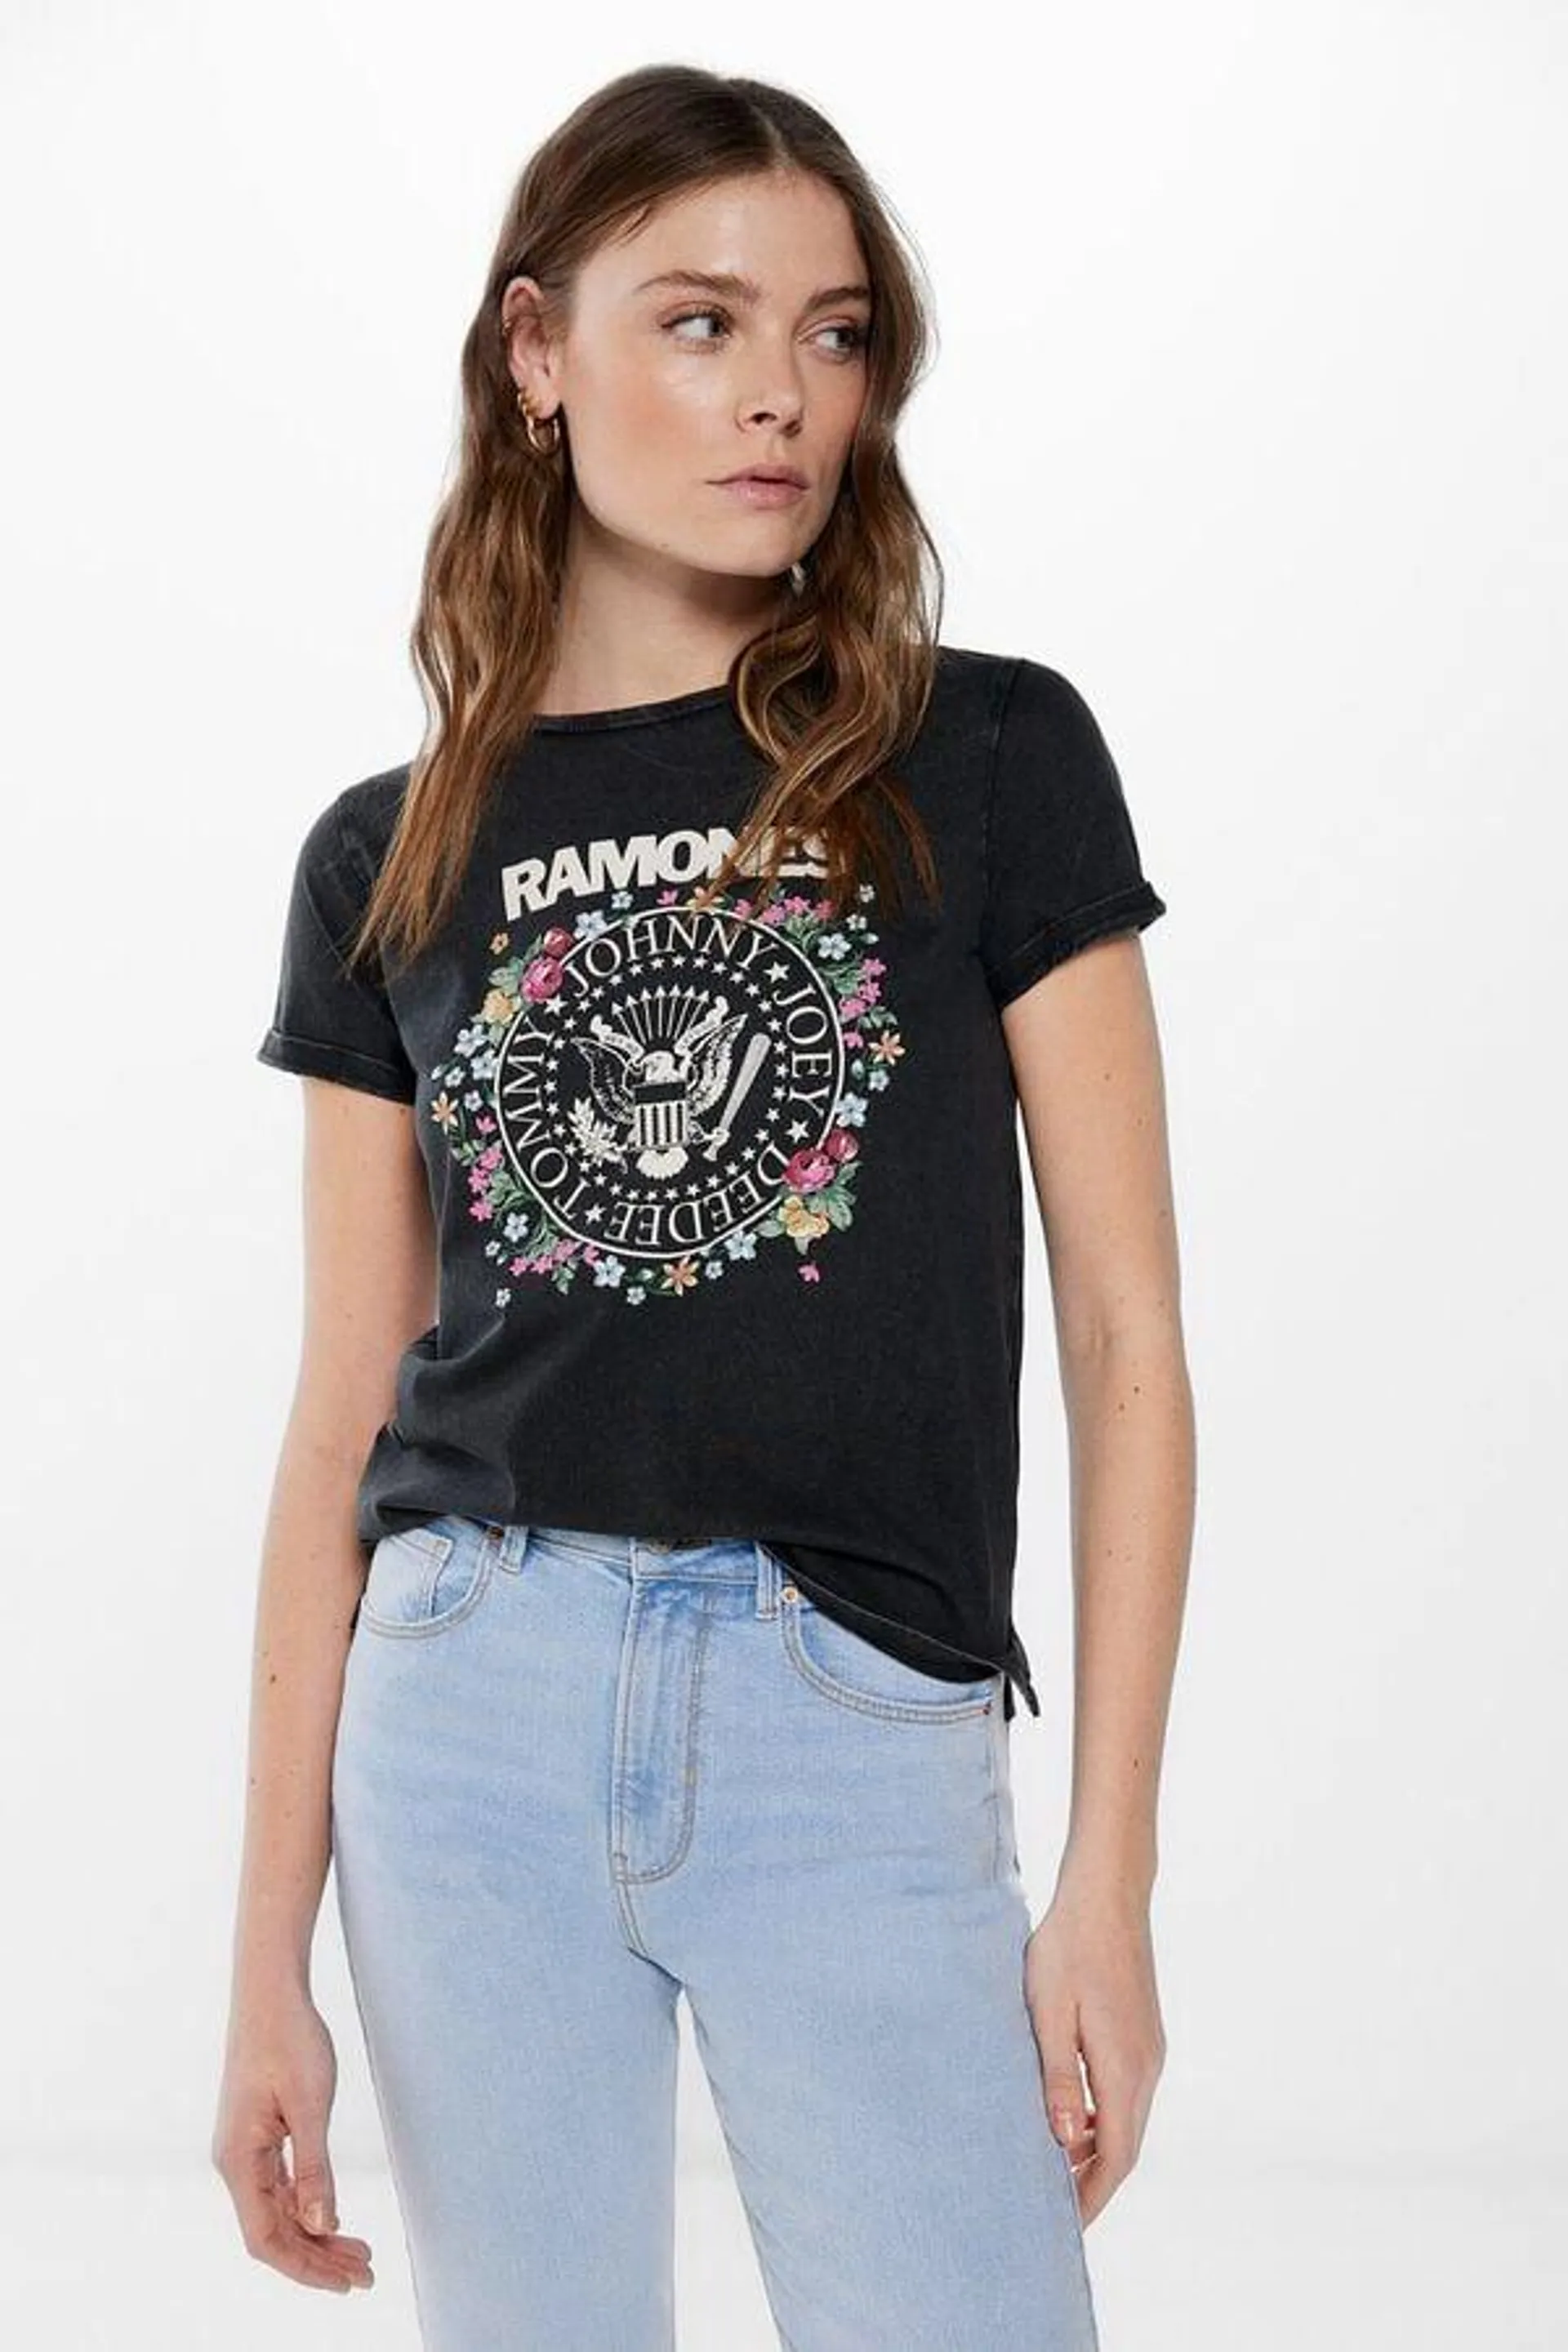 Camiseta "Ramones"